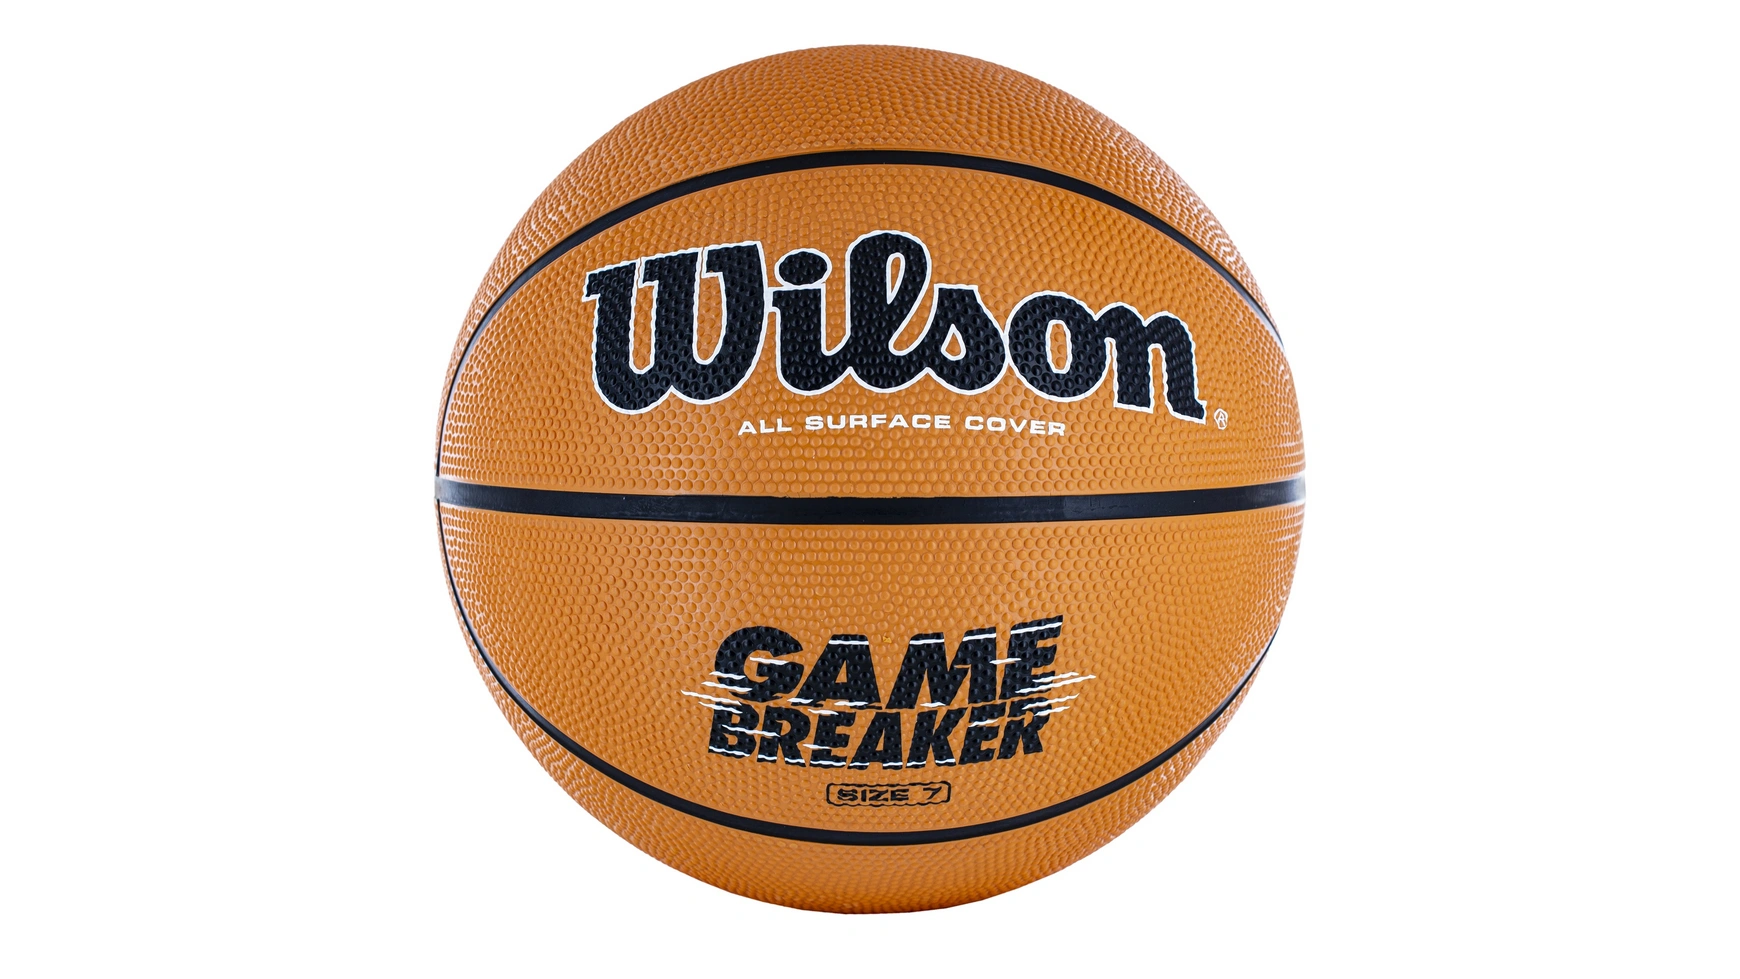 цена Wilson Basketball Gamebreaker, размер 7